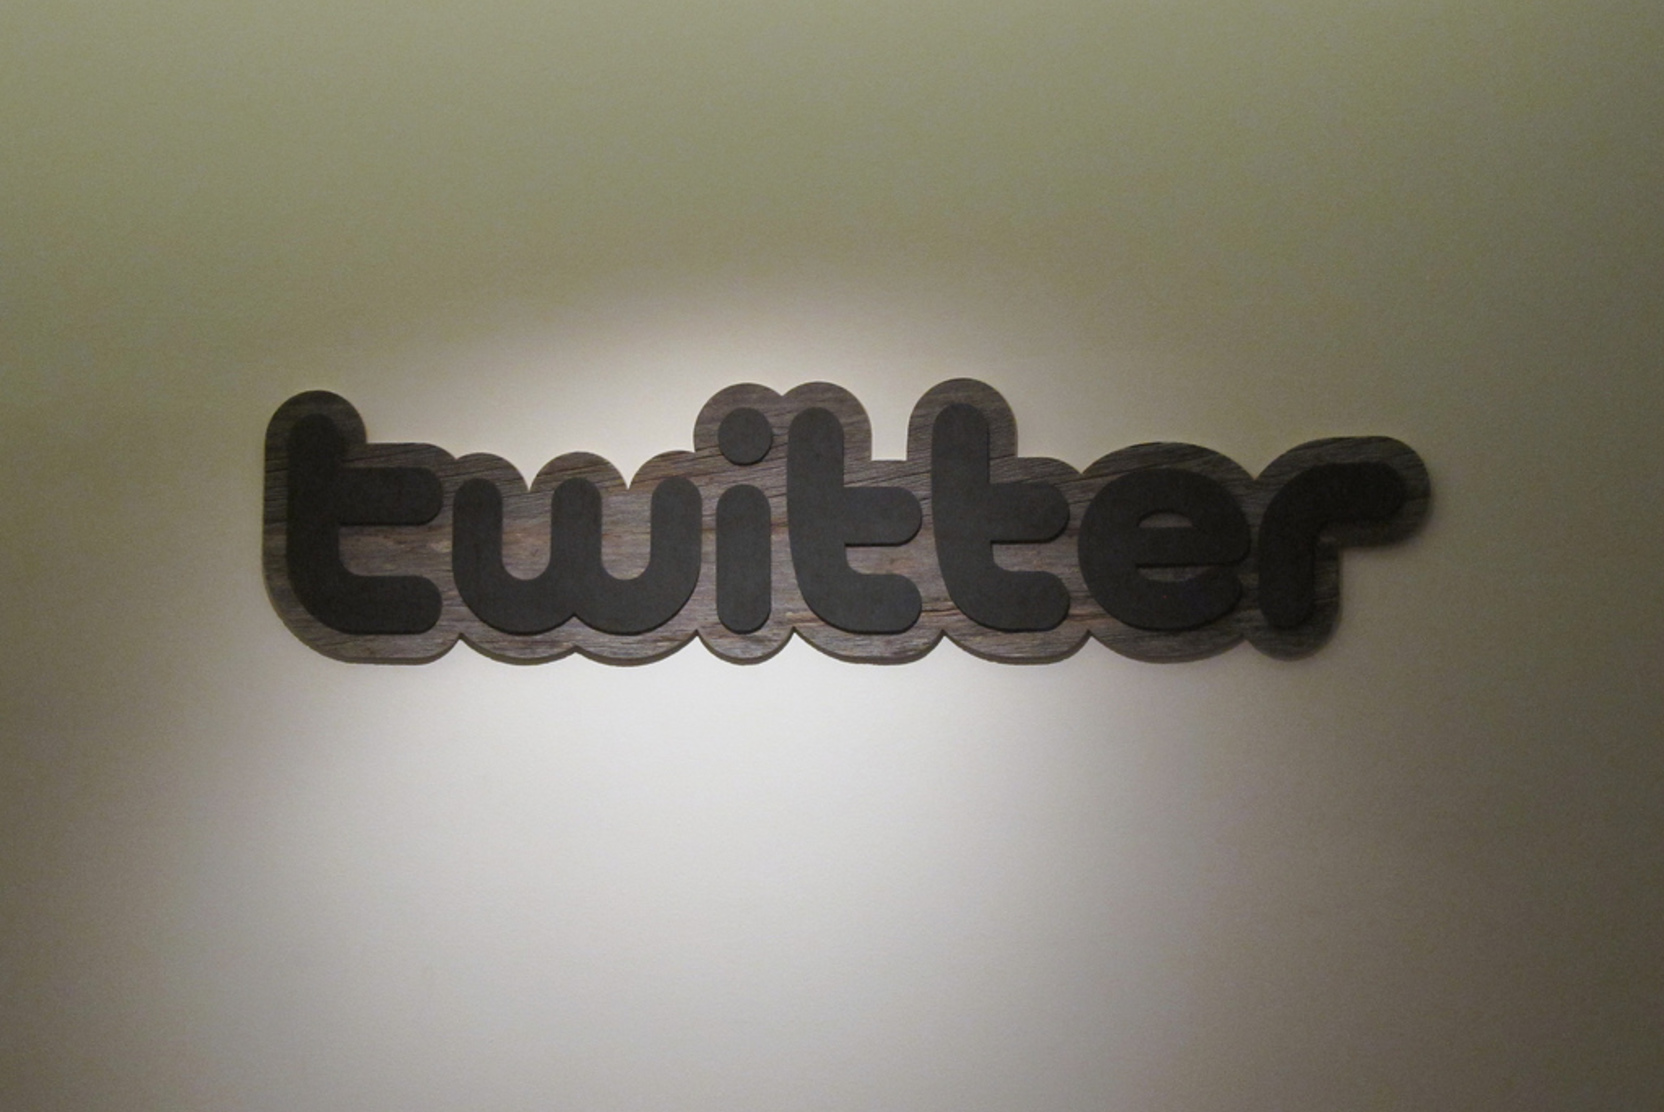 СМИ: С Twitter требуют 14 миллионов долларов из-за неоплаченных счетов